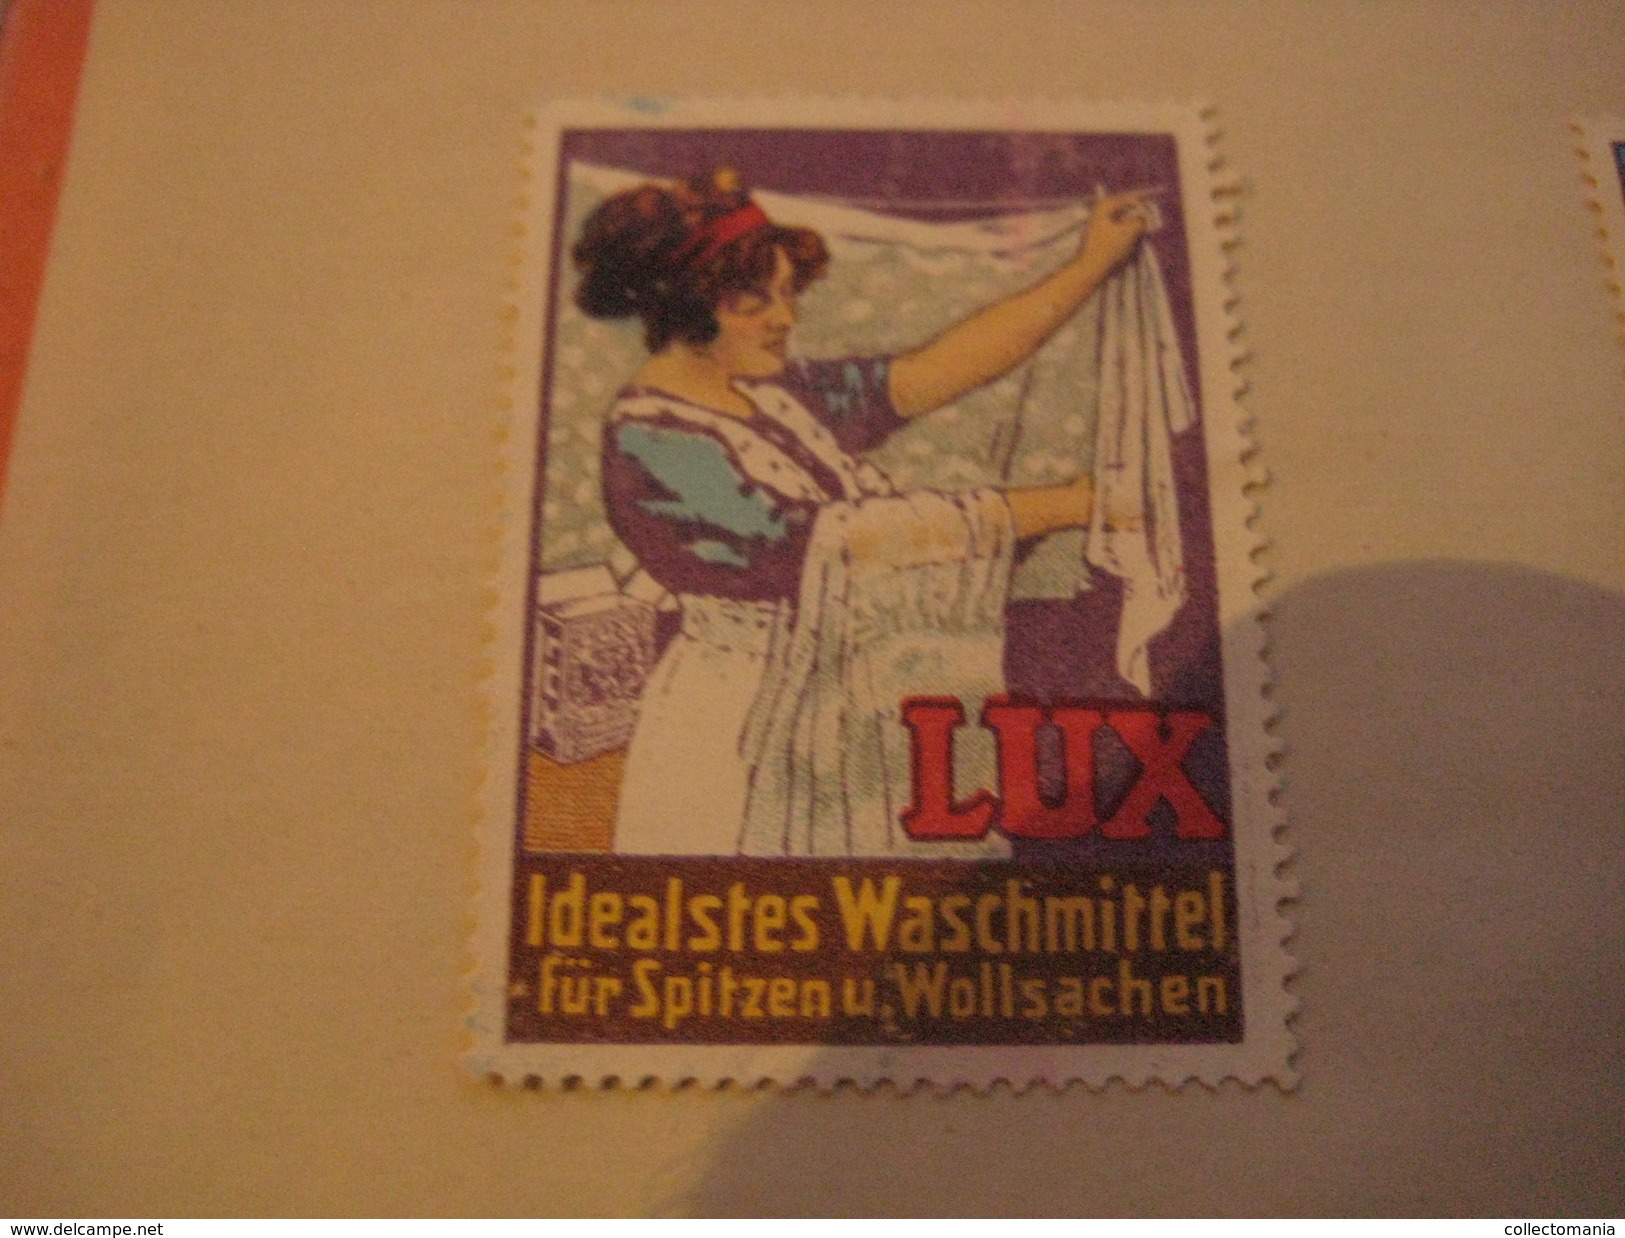 6 Poster Stamp Advertising LUX Waschmittel PUTZmittel VIM  Litho ART Putzt Alles - Cinderellas